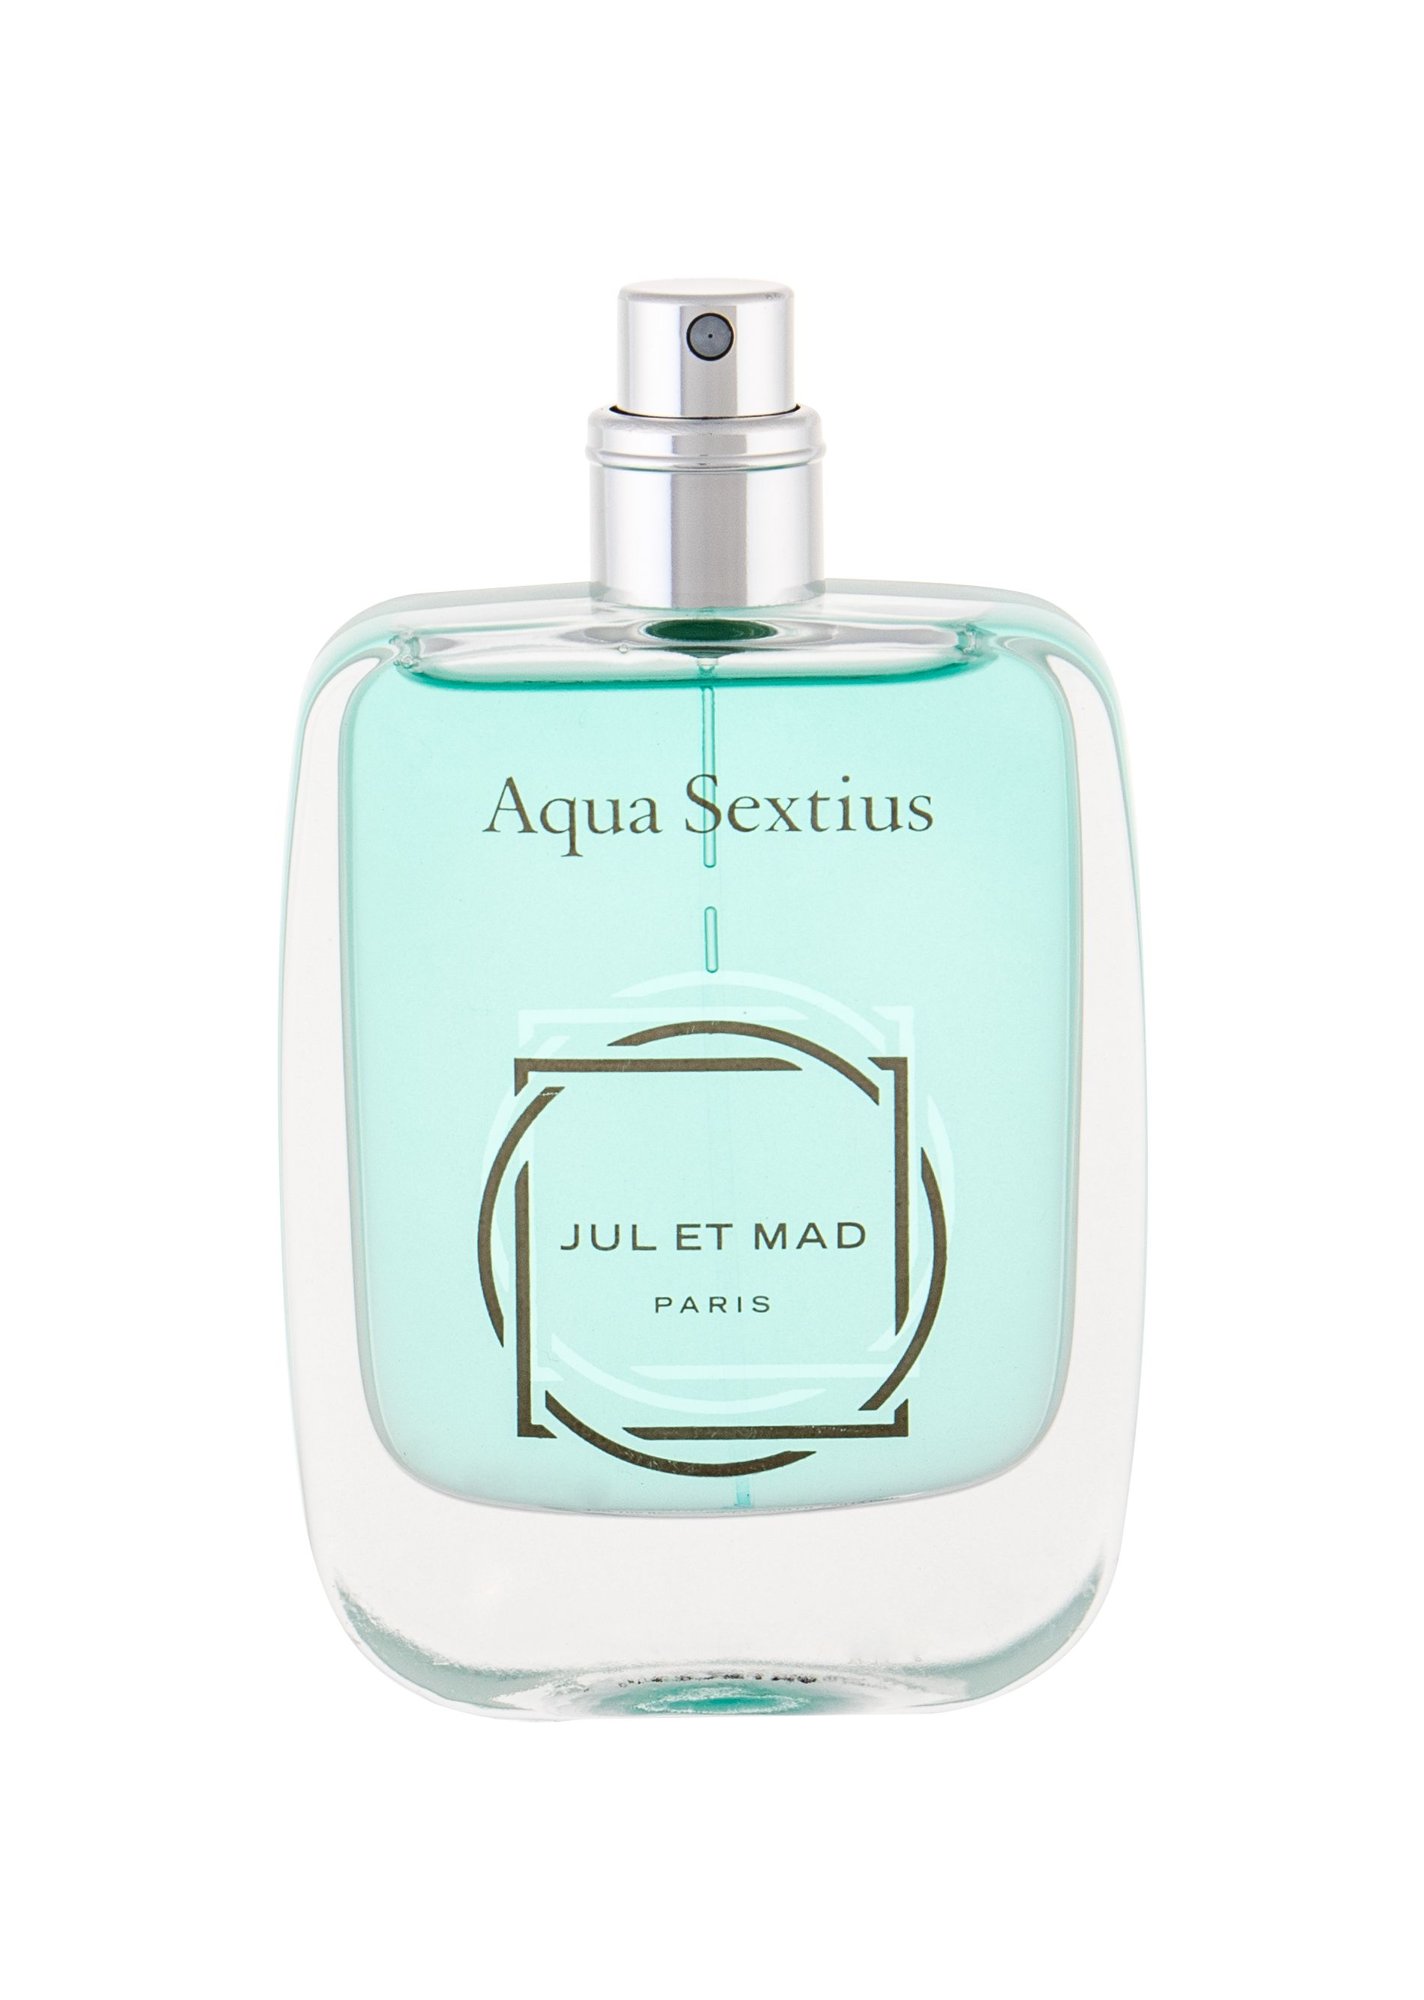 Jul et Mad Paris Aqua Sextius 50ml NIŠINIAI Kvepalai Unisex Parfum Testeris